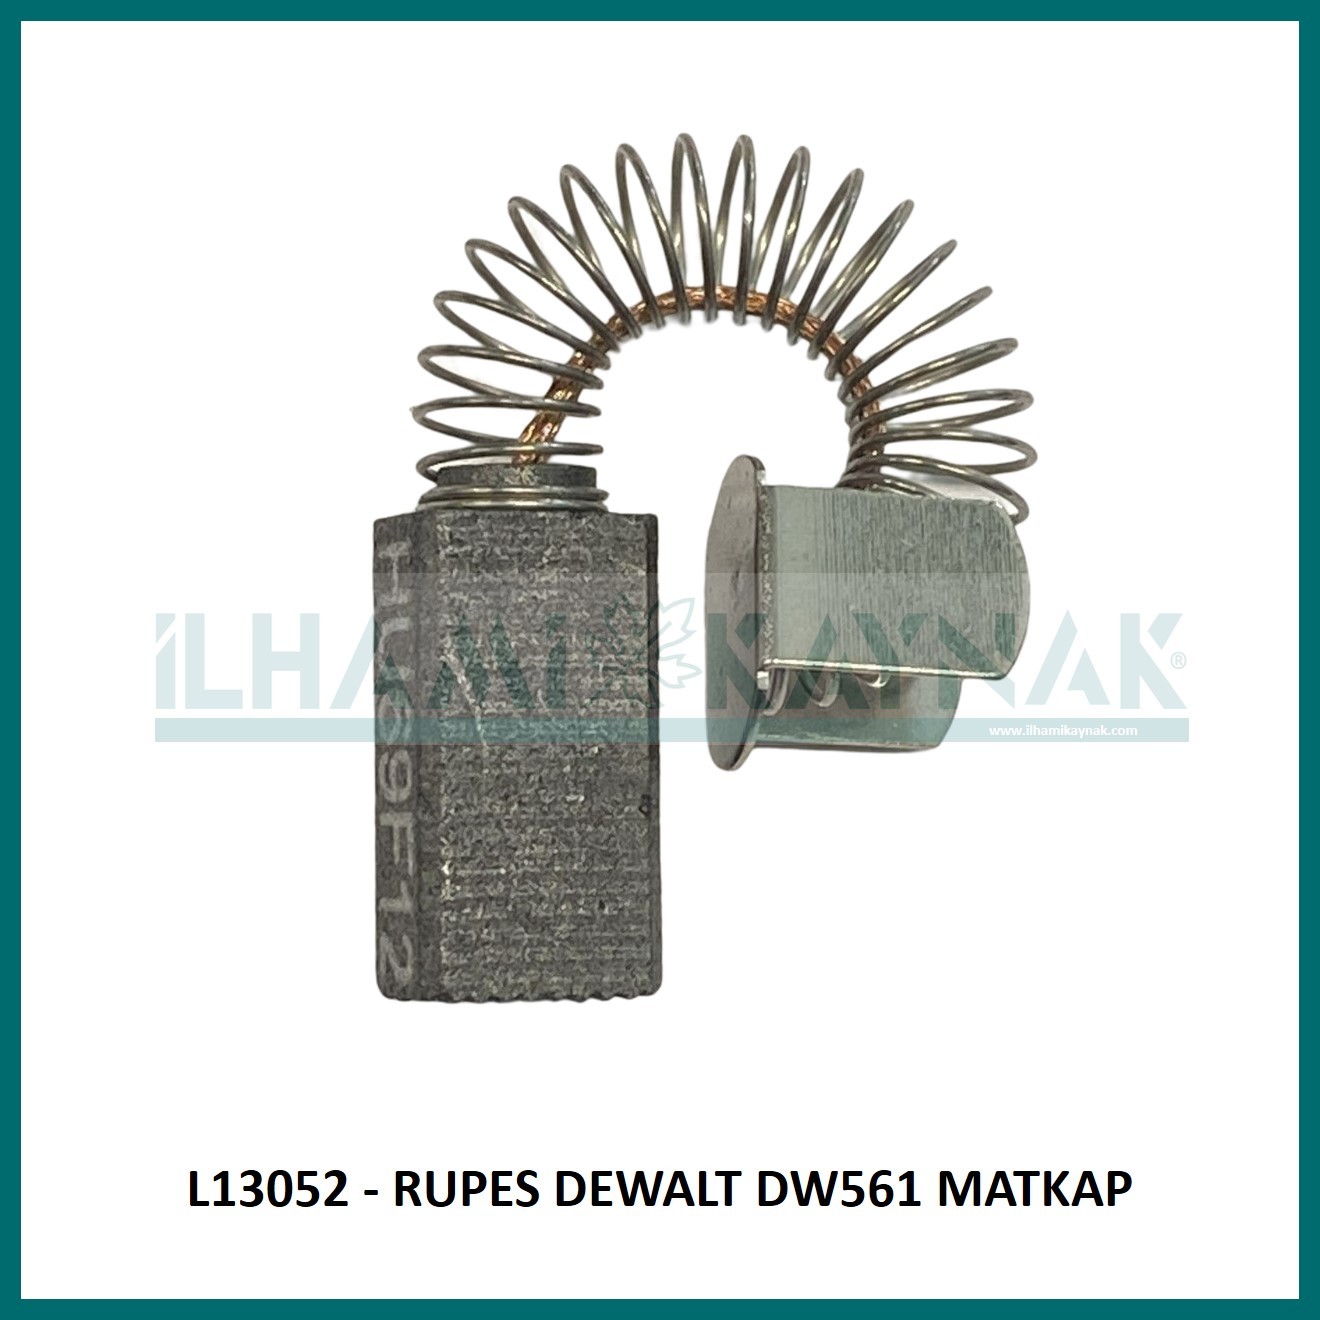 L13052 - RUPES DEWALT DW561 MATKAP - 6*8*18 mm - 100 Adet